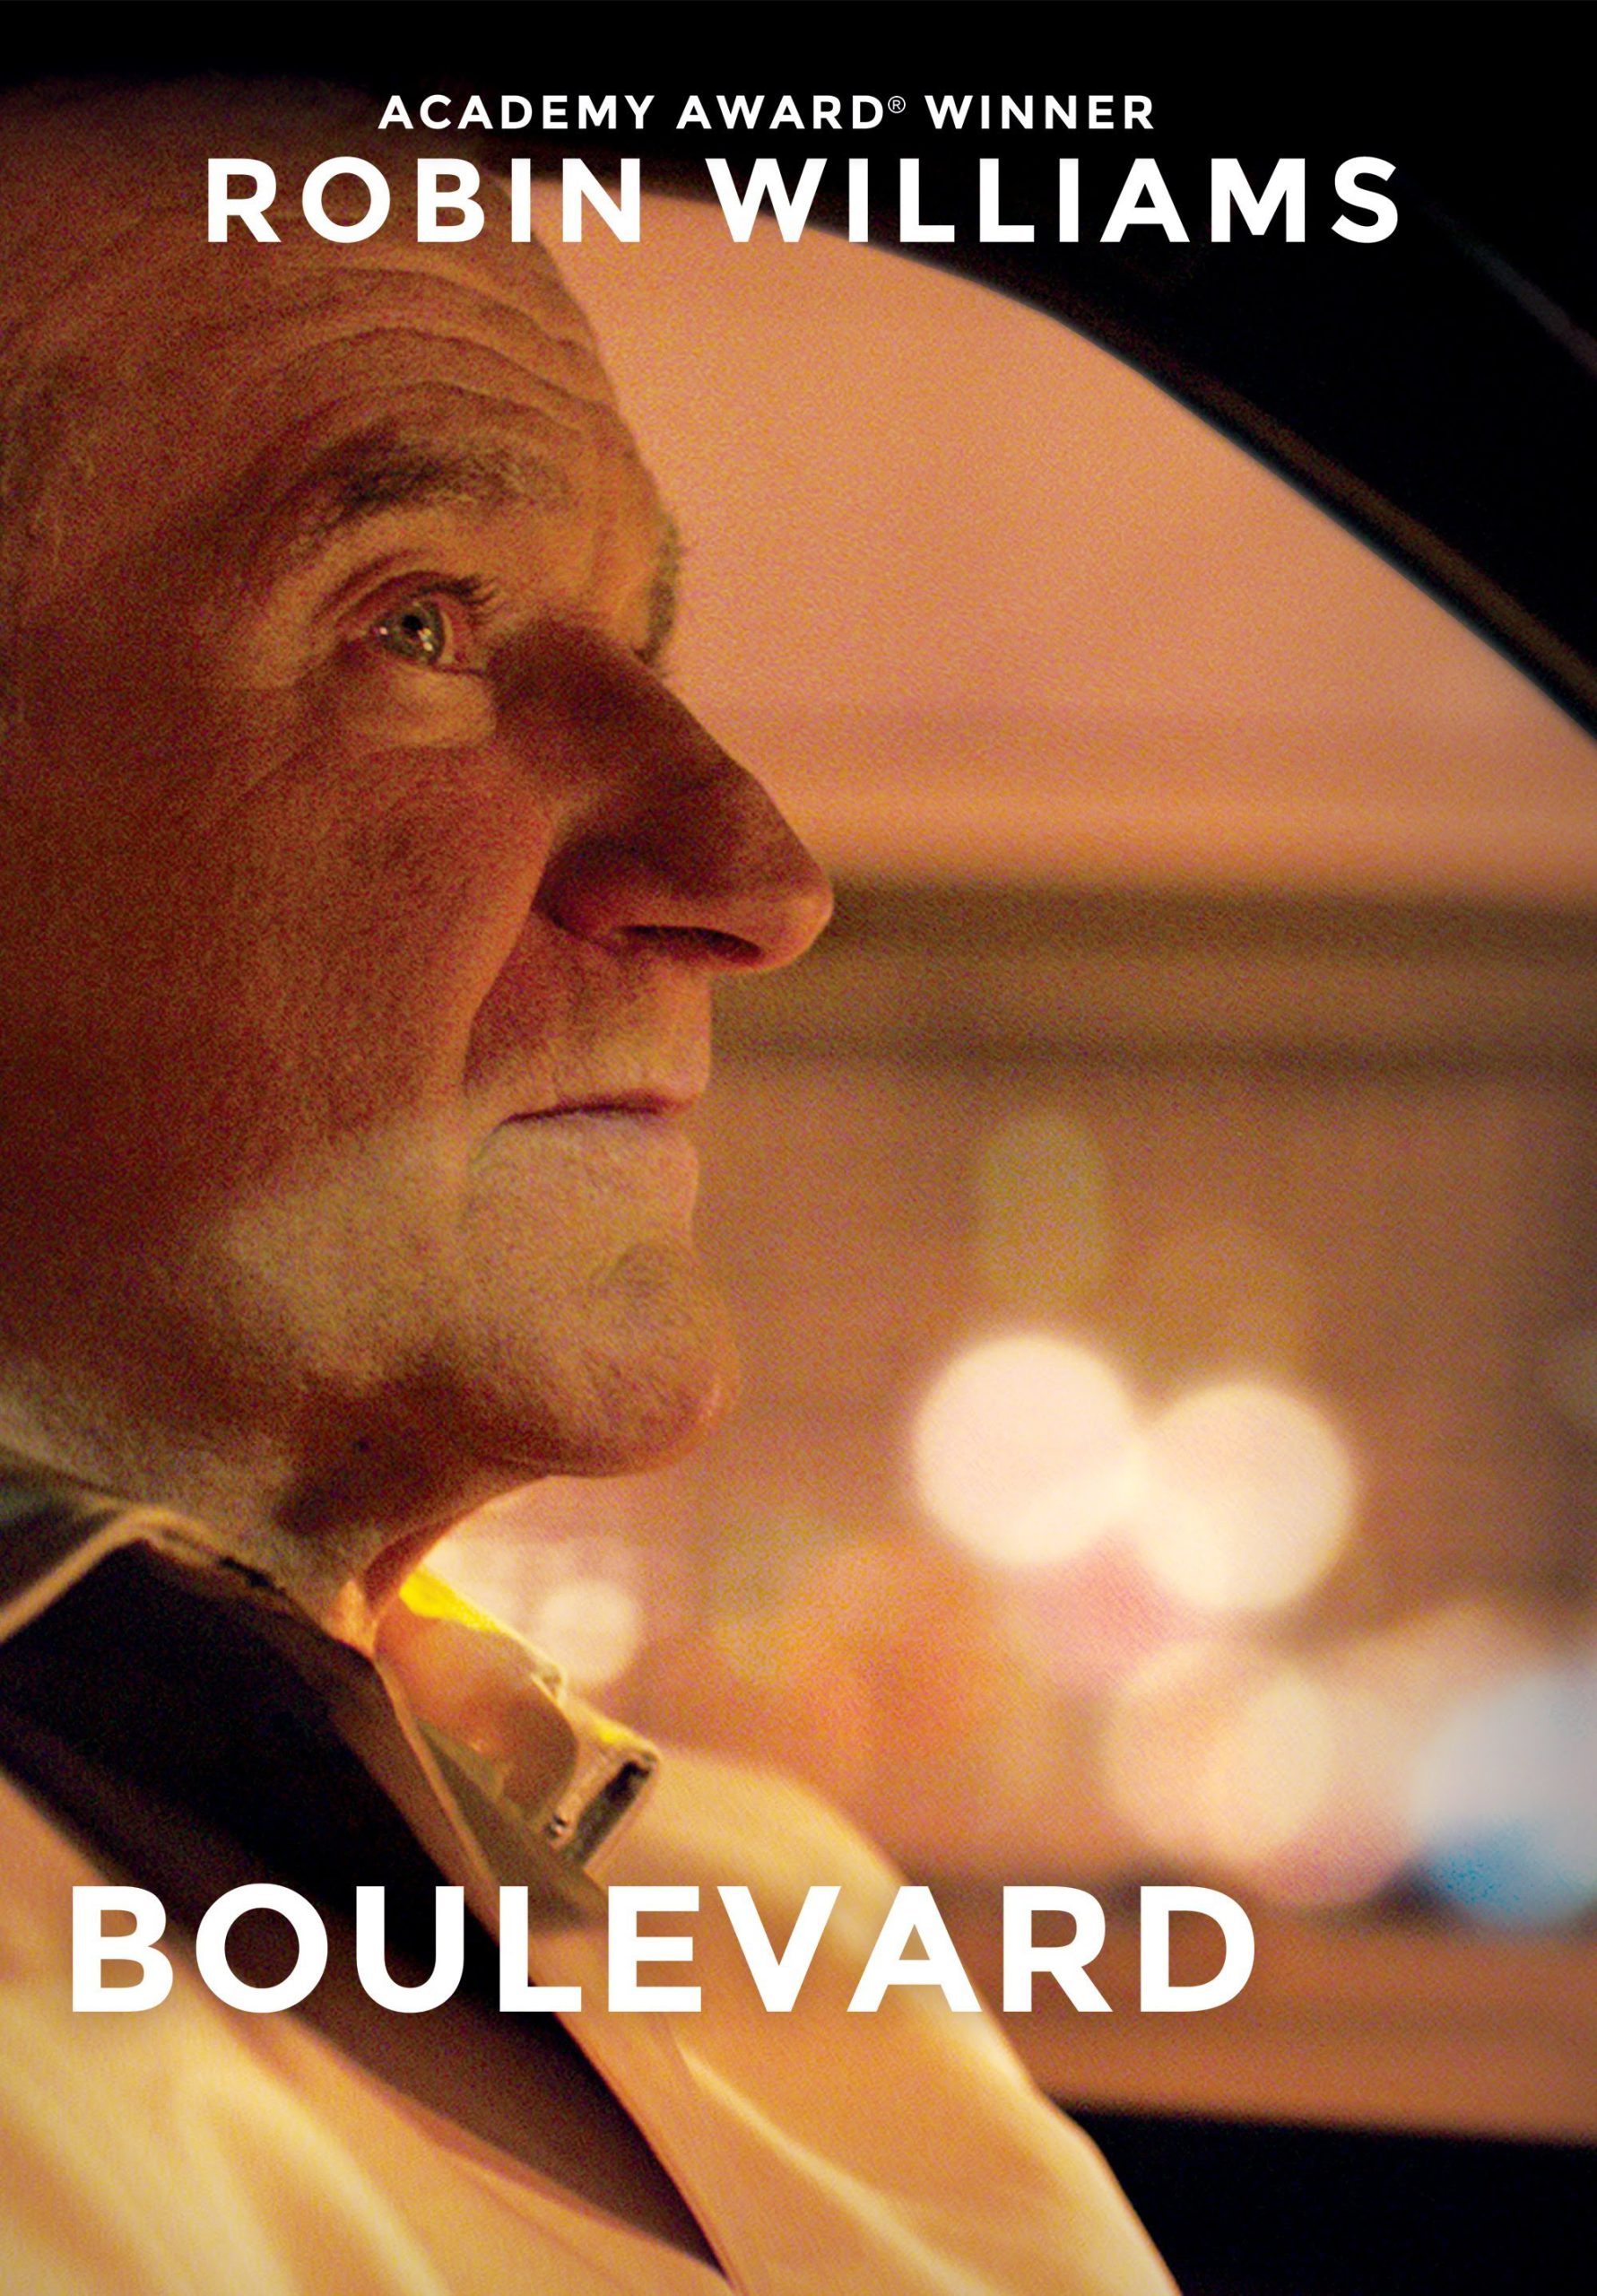 Boulevard [HD] (2014)